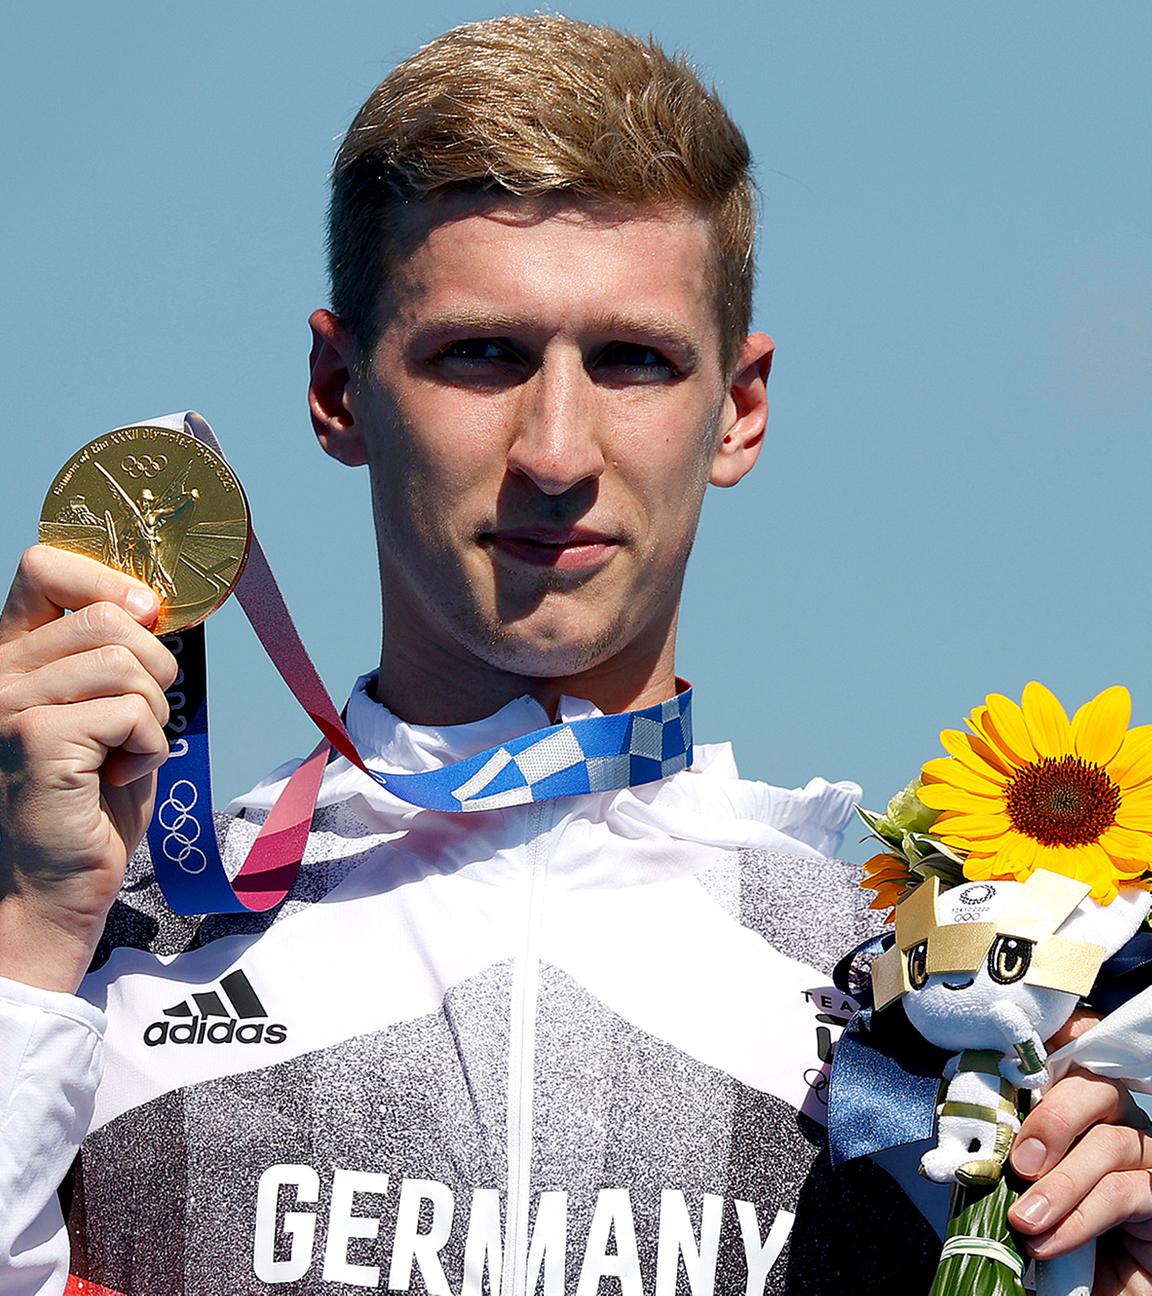 Florian Wellbrock aus Deutschland gewinnt Gold.